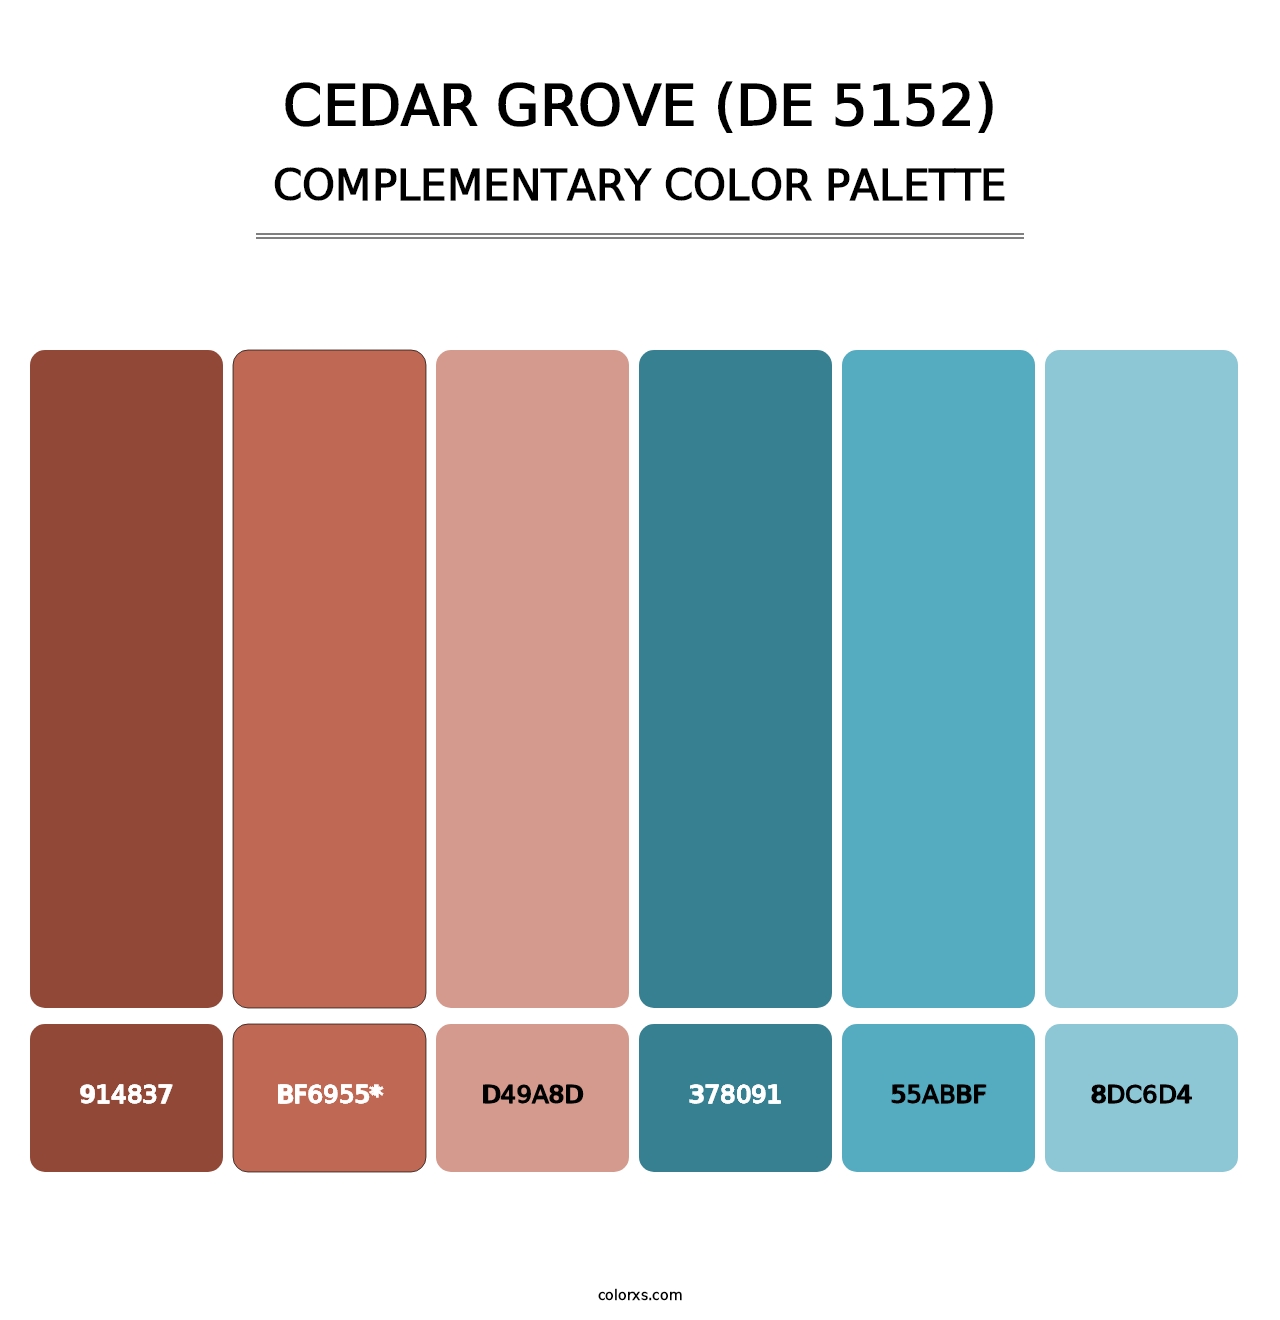 Cedar Grove (DE 5152) - Complementary Color Palette